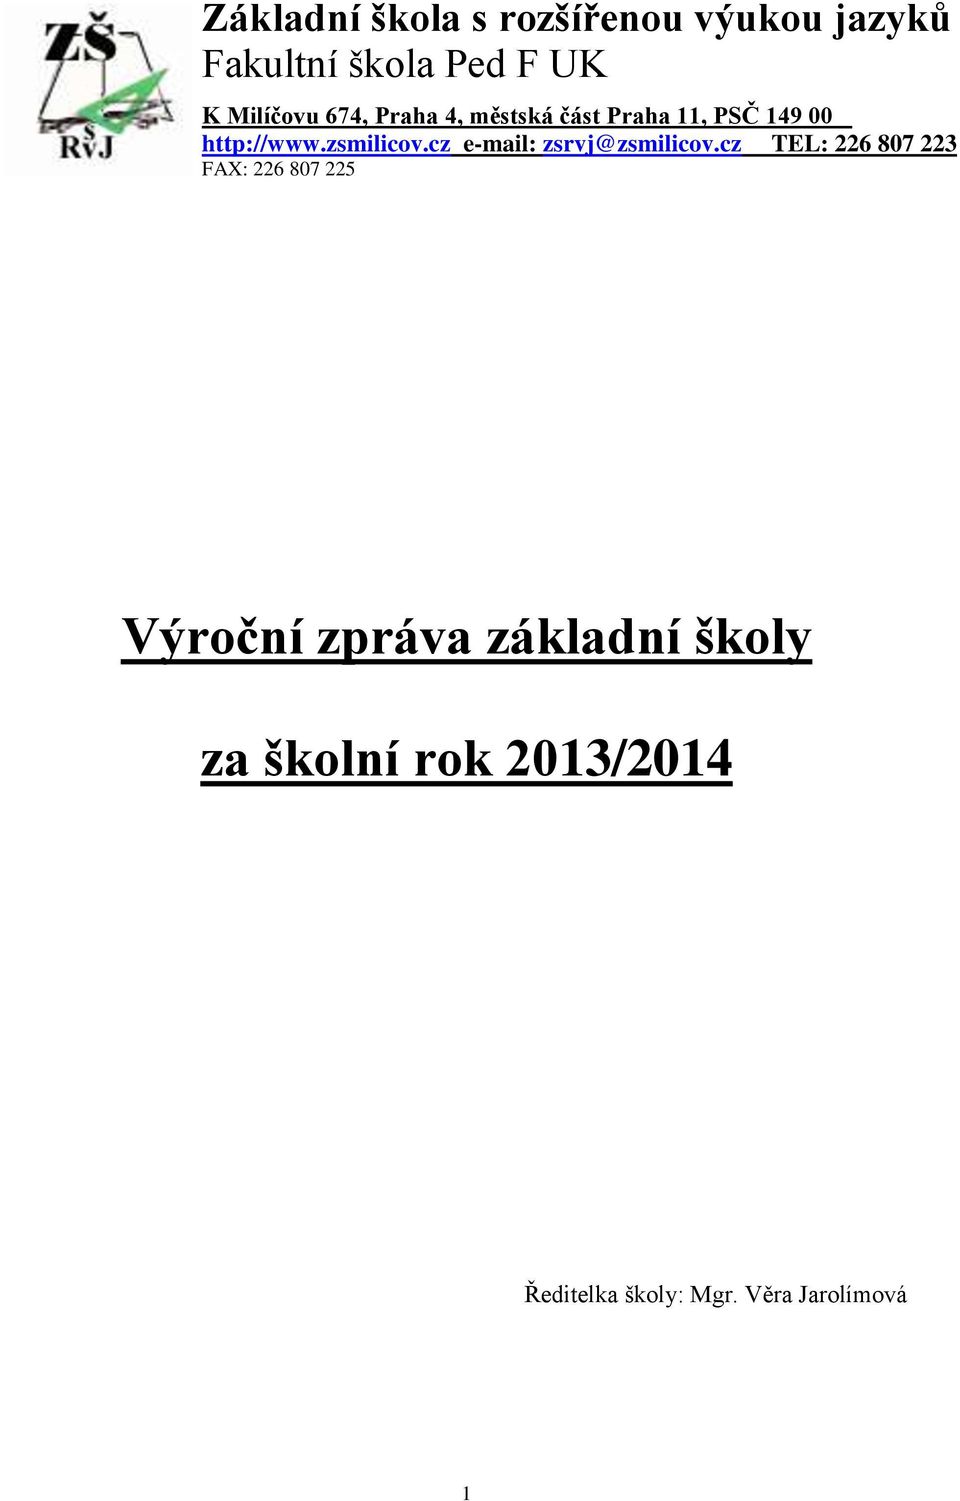 zsmilicov.cz e-mail: zsrvj@zsmilicov.